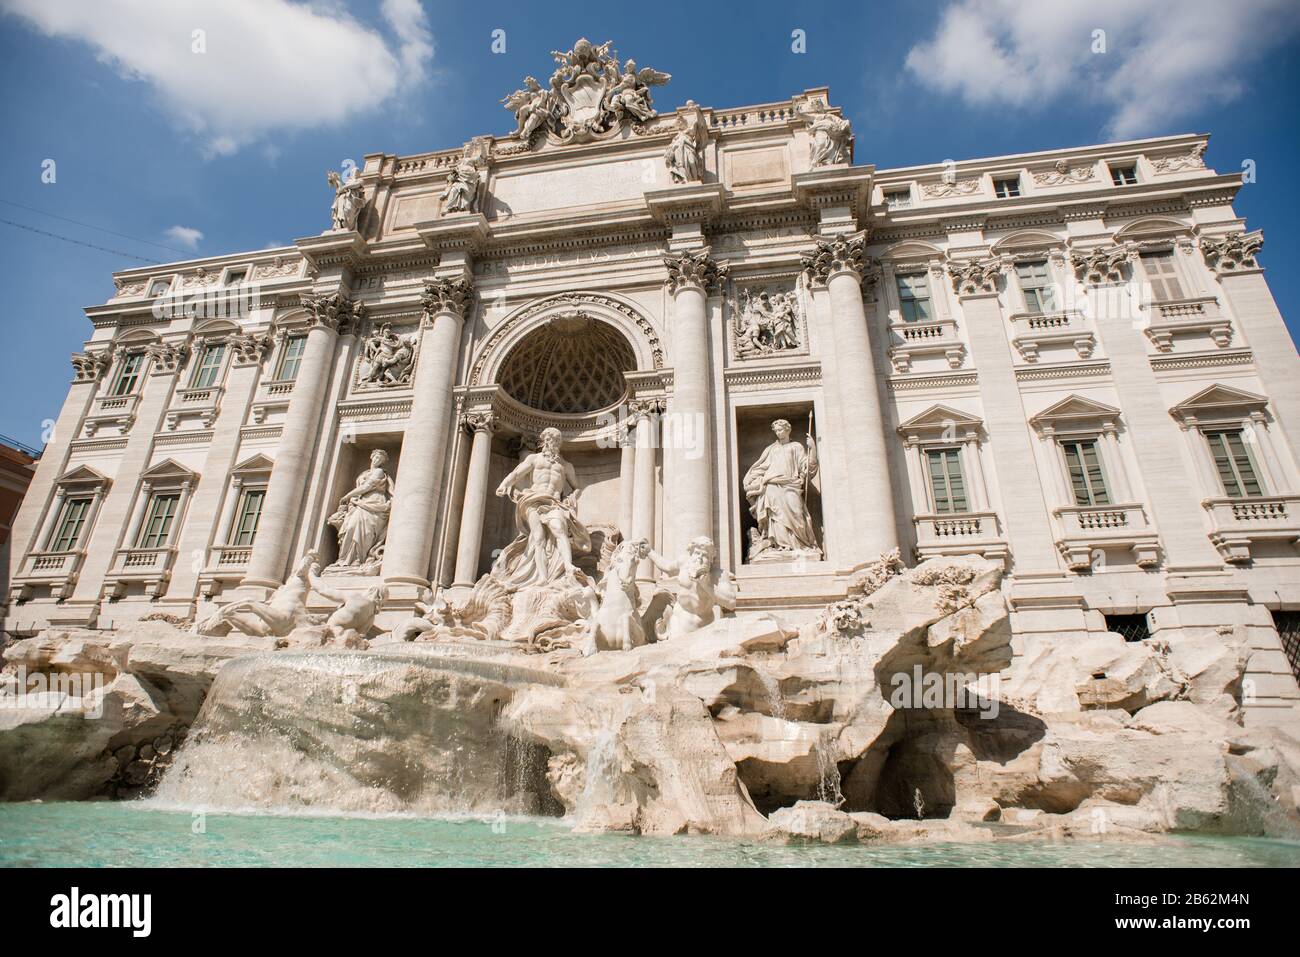 Berühmter Trevi-Brunnen in Rom, Italien. Architektur im Stil des Barock und Wahrzeichen der Stadt. Stockfoto